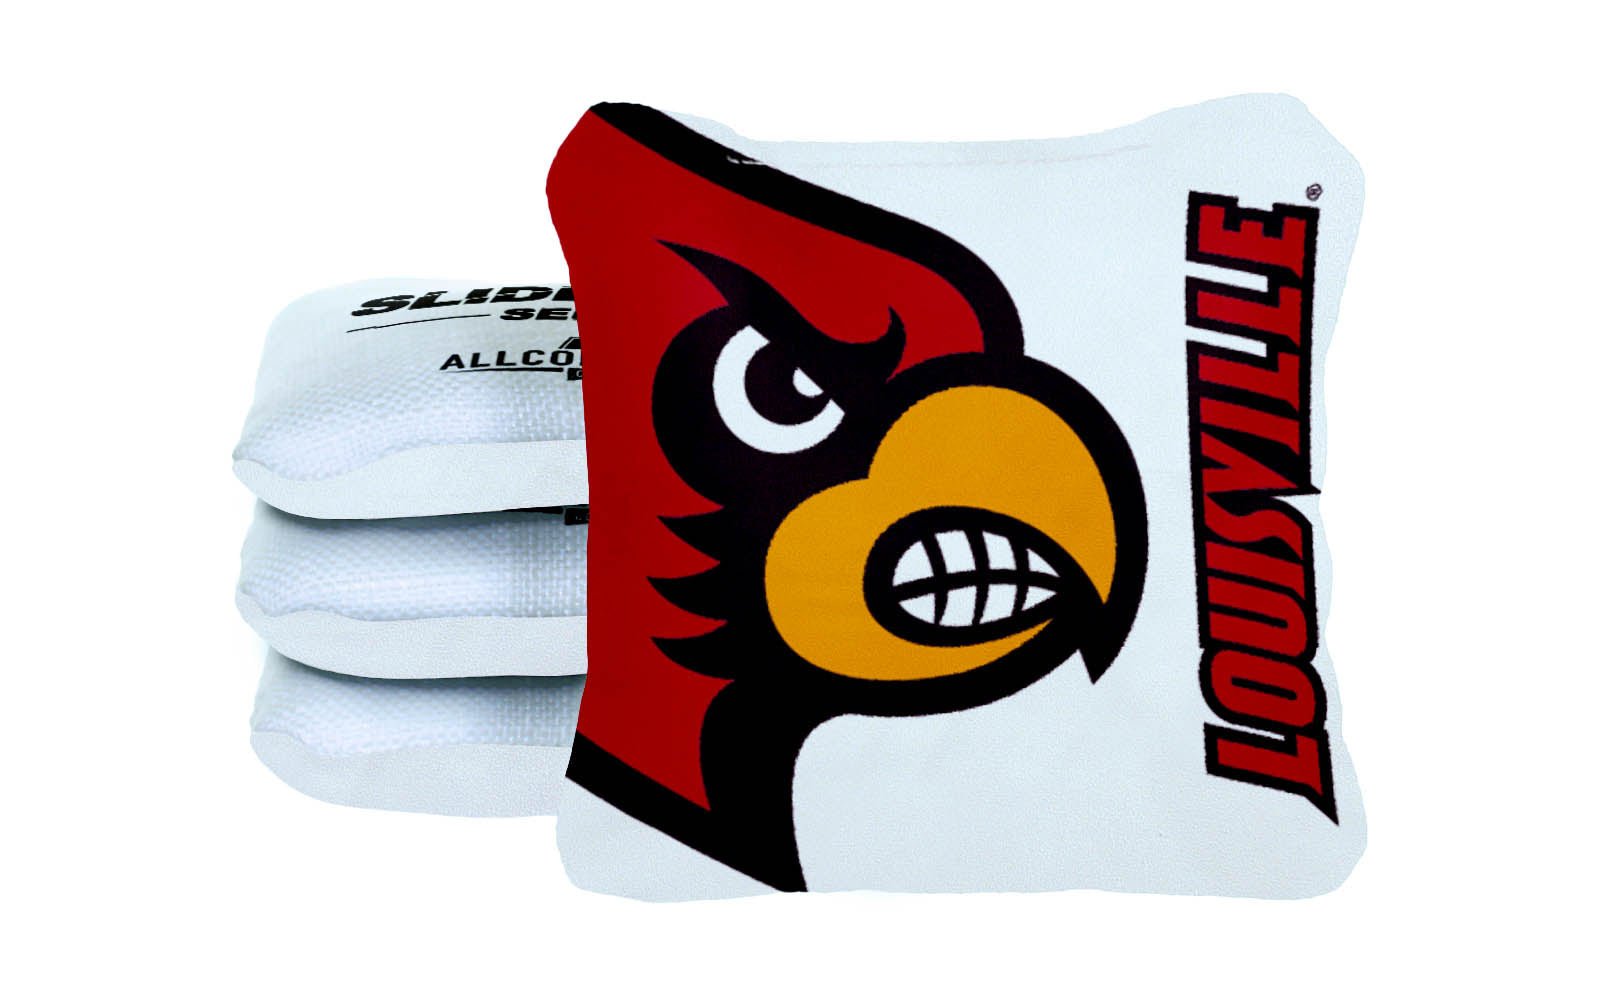 Officially Licensed Collegiate Cornhole Bags - AllCornhole Slide Rite - Set of 4 - University of Louisville